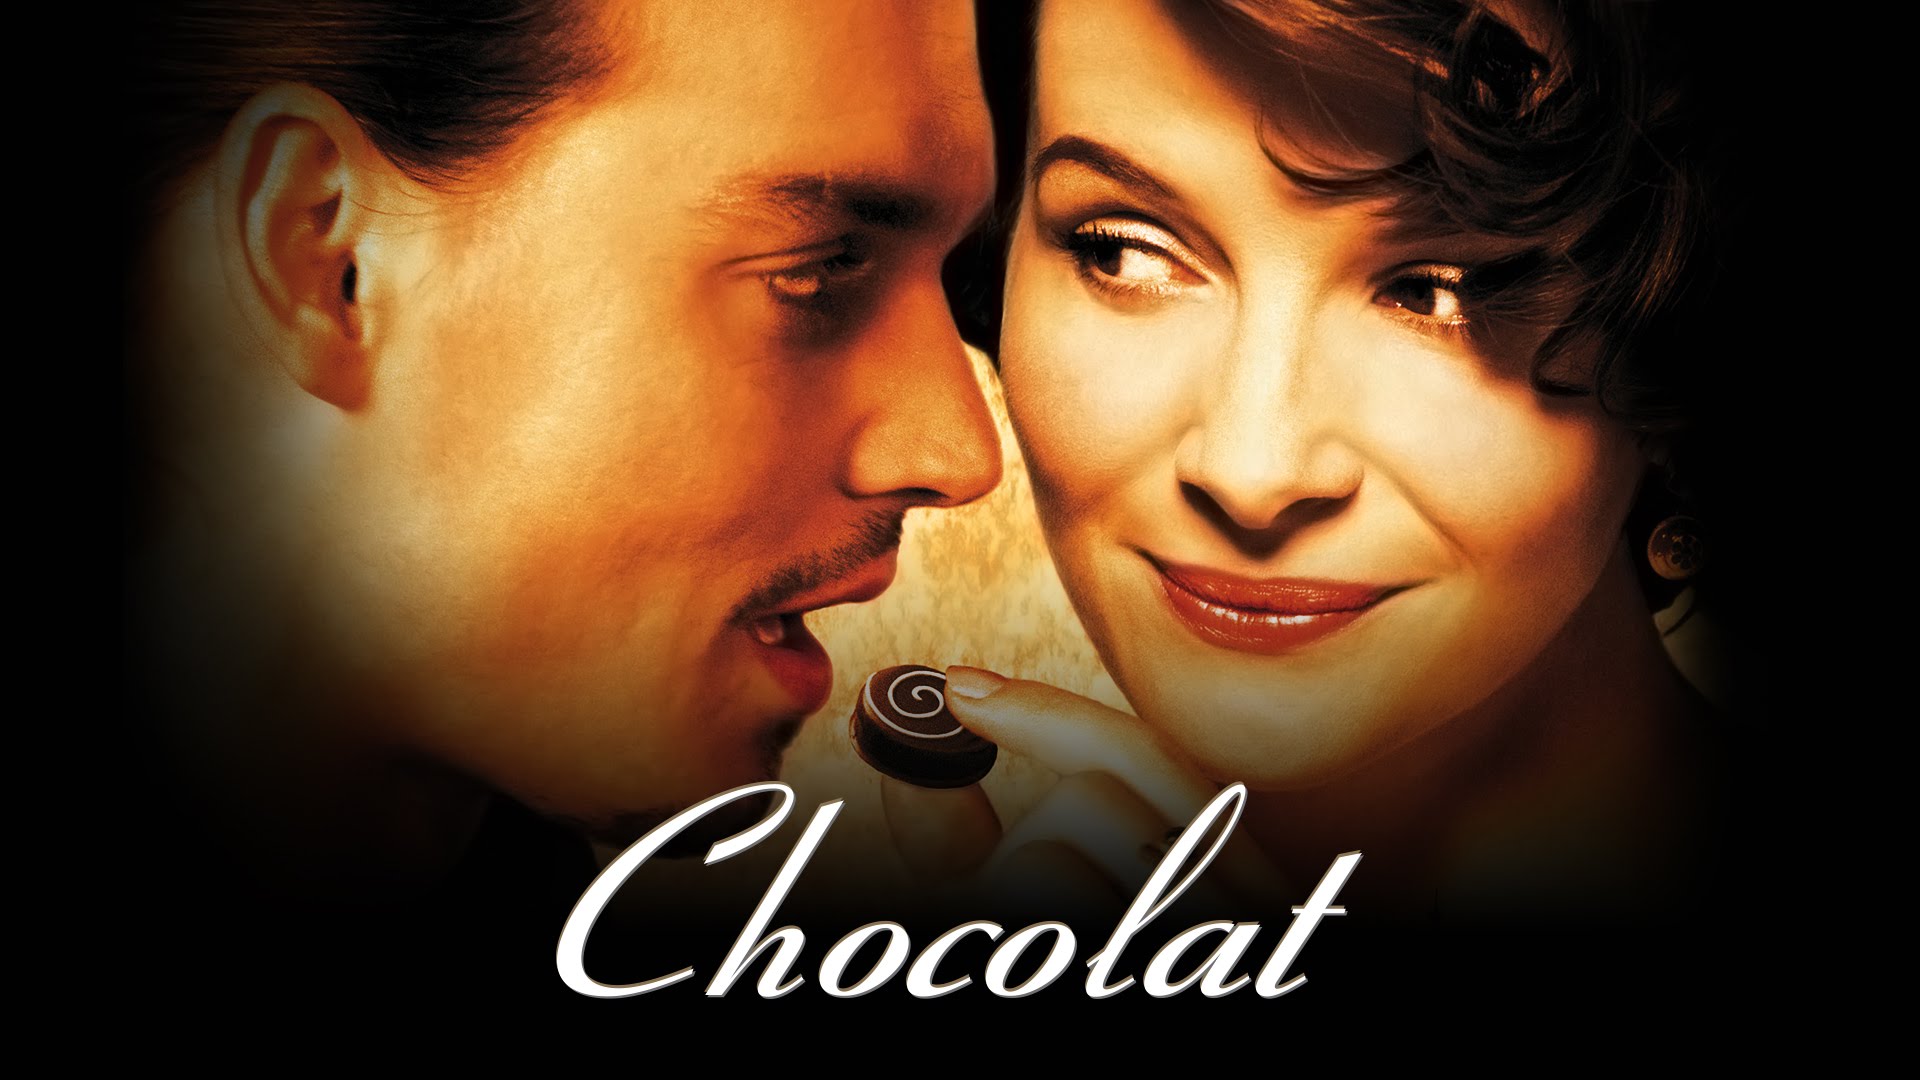 Chocolat หวานนัก...รักช็อคโกแลต 2000